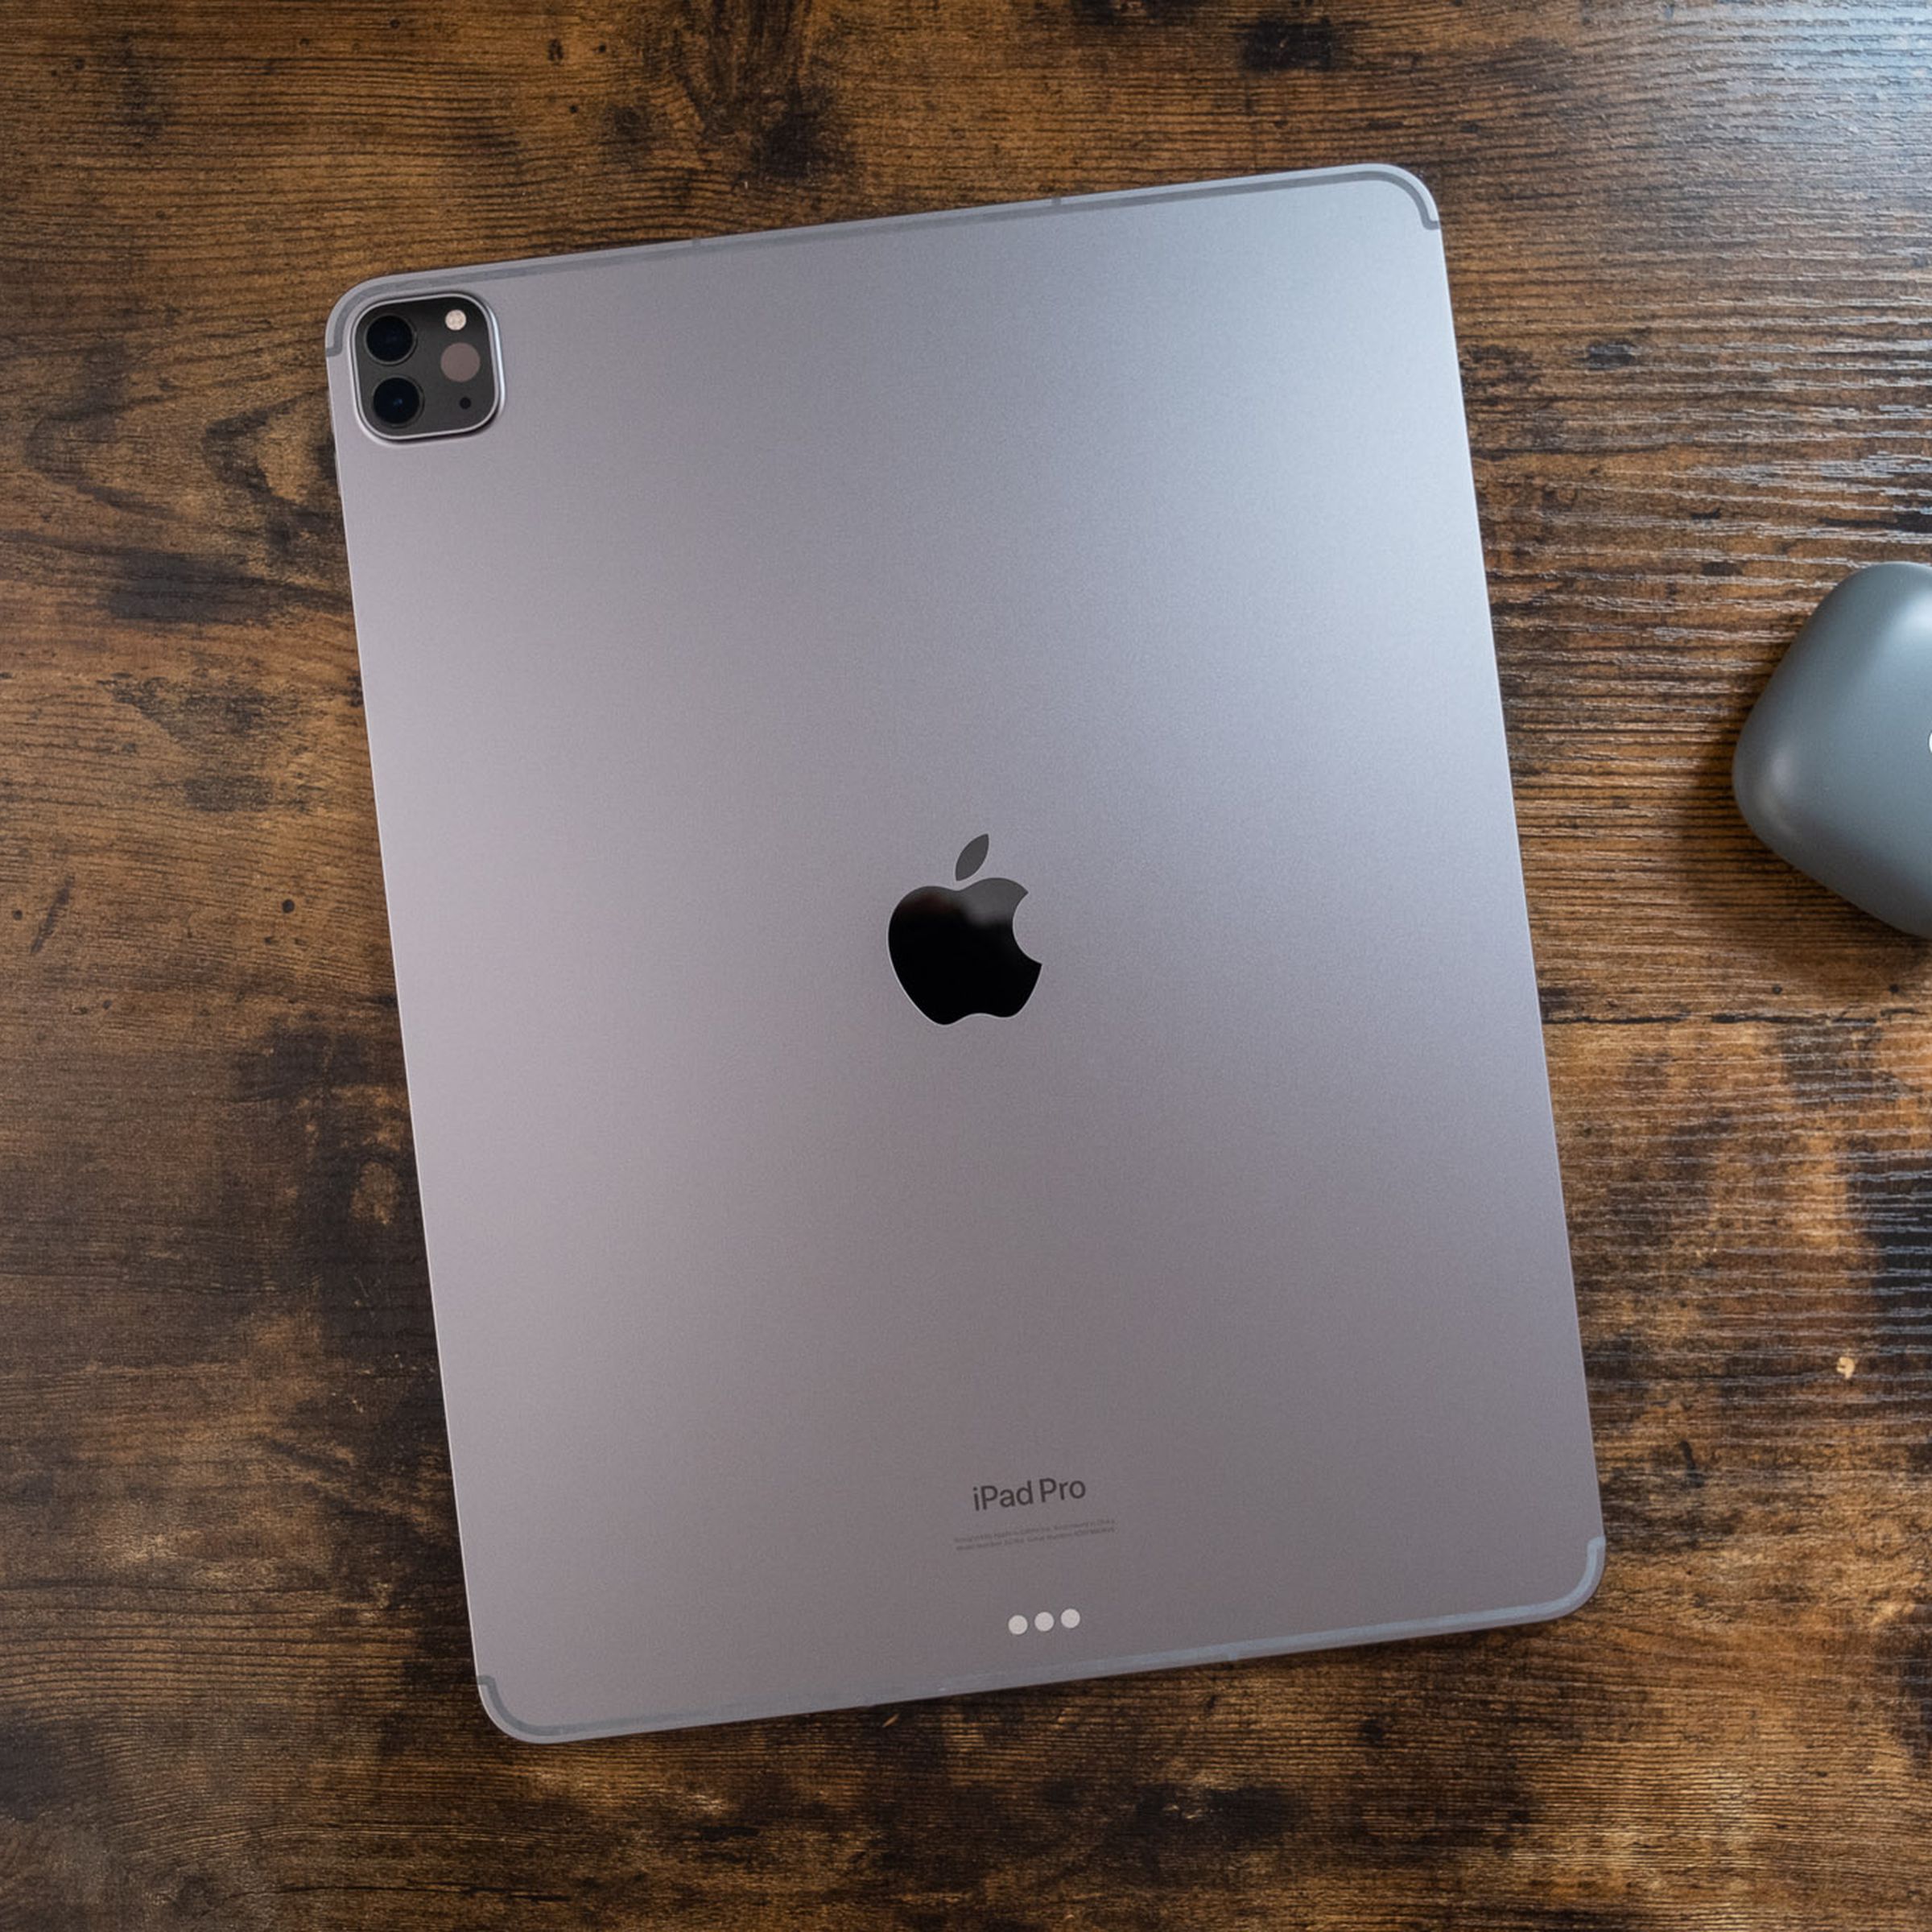 Un iPad Pro gris espacial de 12,9 pulgadas colocado boca abajo sobre una mesa de madera, visto desde arriba hacia abajo.